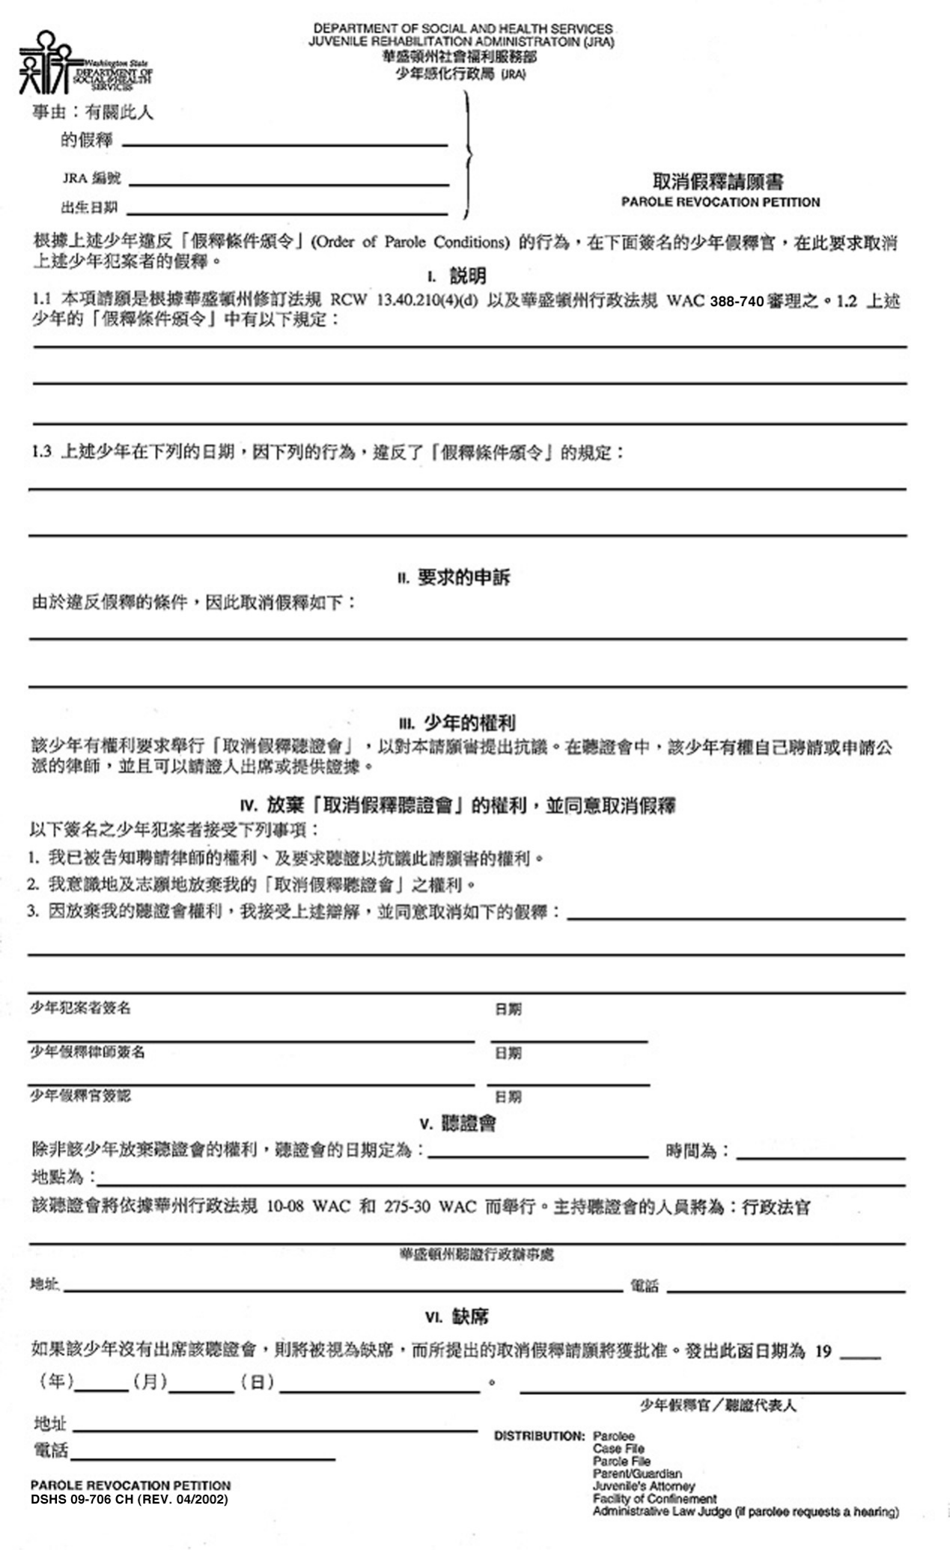 DSHS Form 09-706 Parole Revocation Petition (Juvenile Rehabilitation Administration) - Washington (Chinese), Page 1